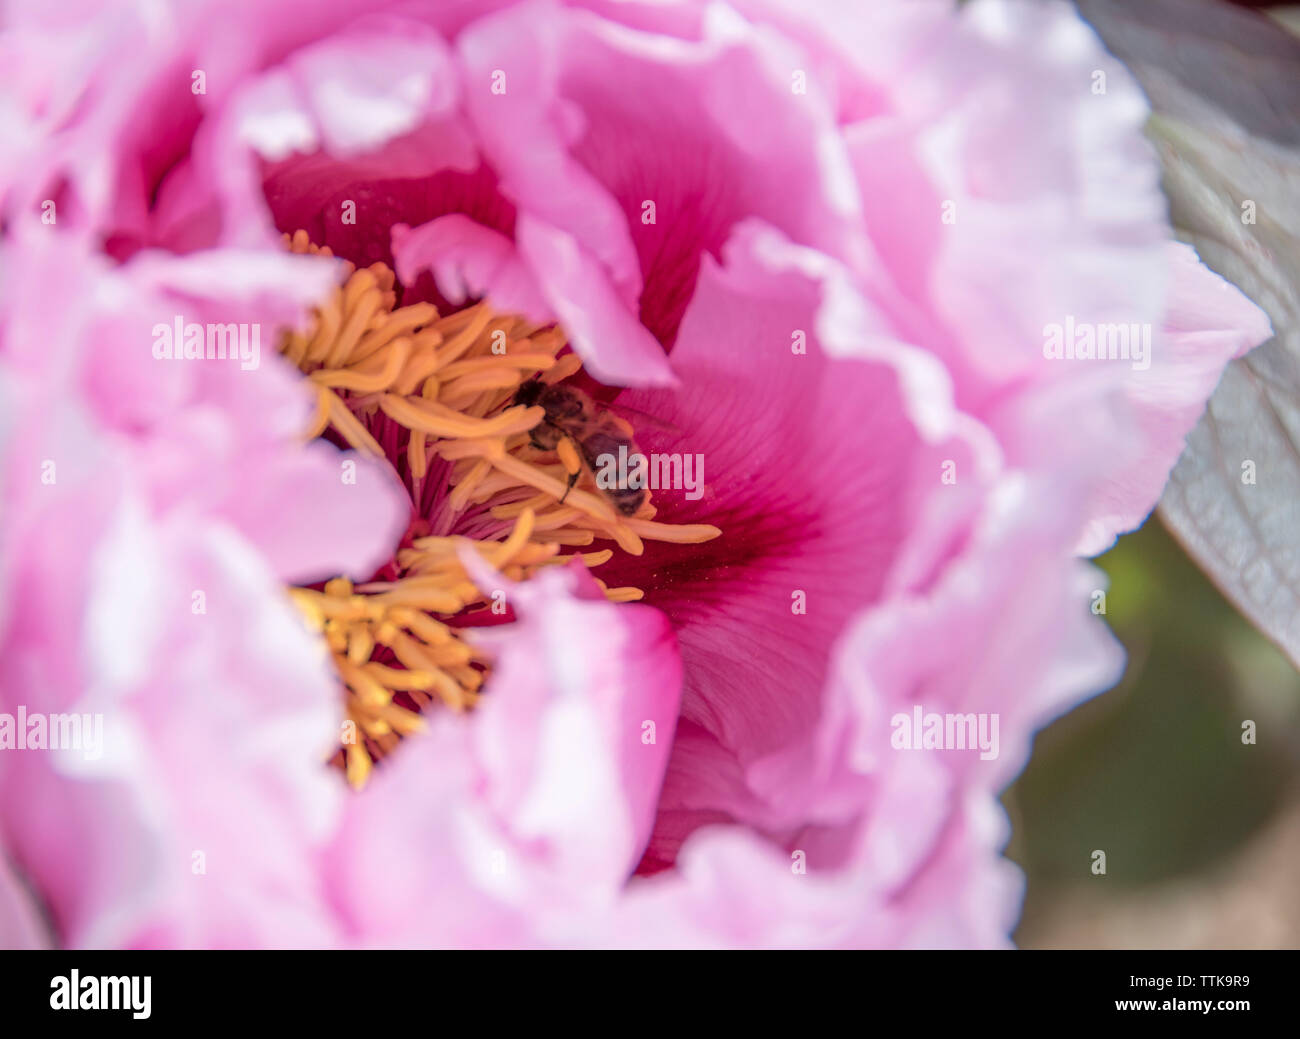 Rosa peonía con recogiendo polen de abejas en el centro Foto de stock